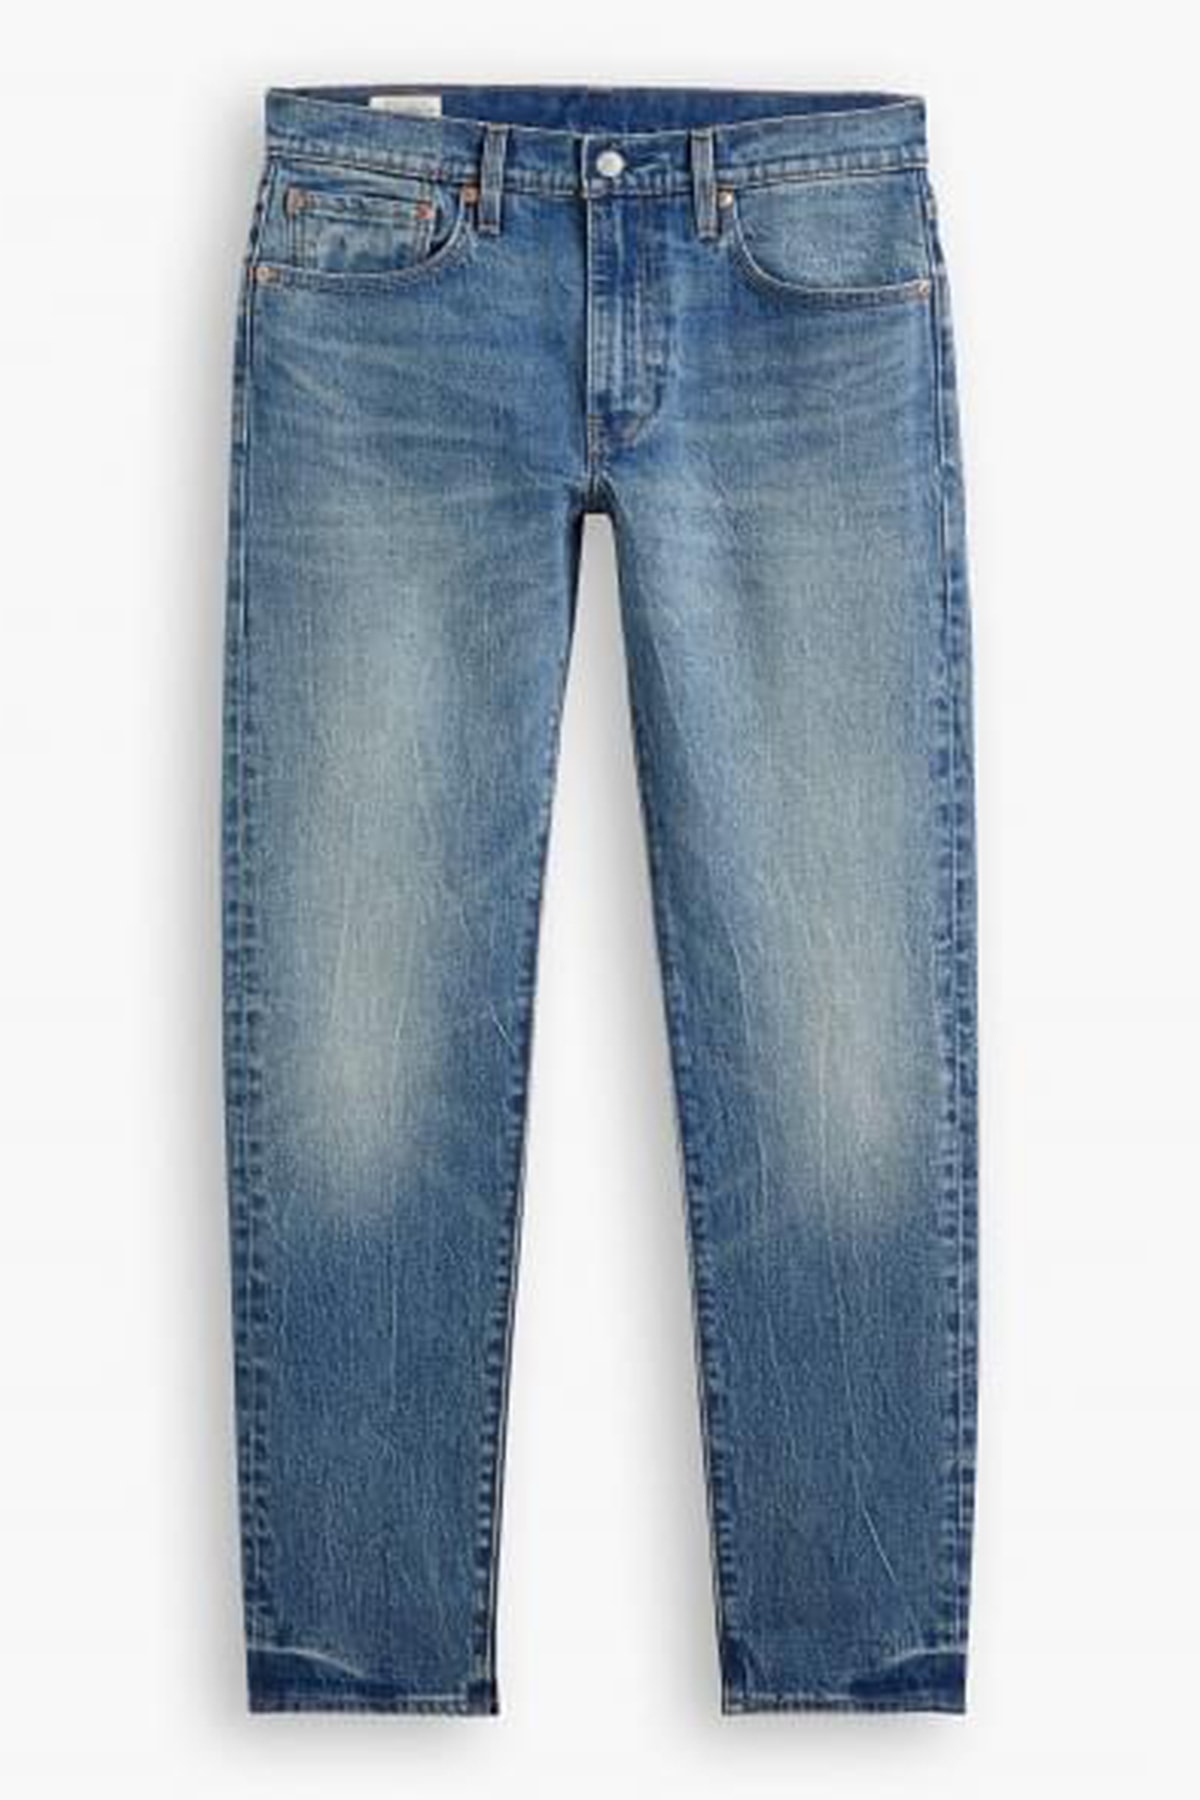 Levi's Pamuklu Slim Fit 512 Jeans Erkek Kot Pantolon 28833